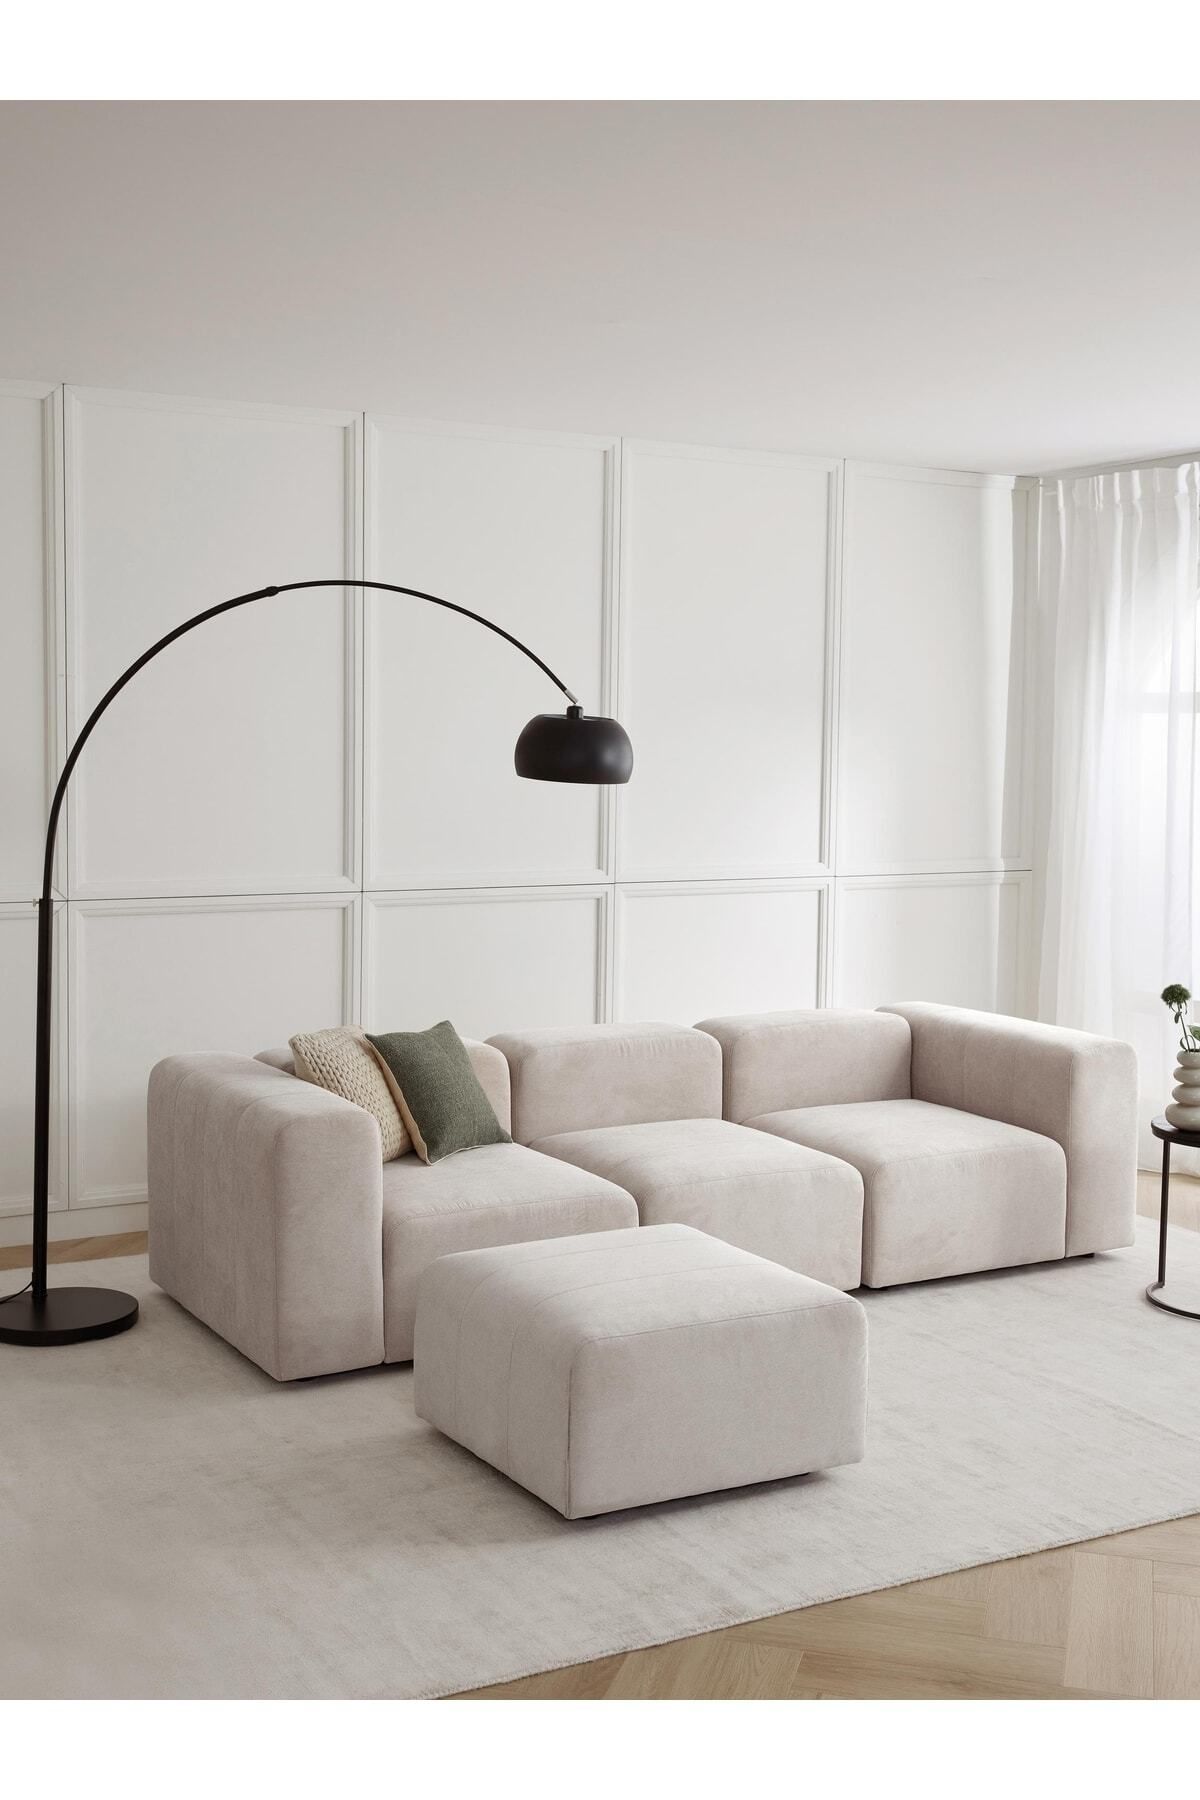 S Home Design Concept Pietro 4 Modül Modüler Kanepe Köşe Koltuk Takımı, Yönsüz Kadife, Kırık Beyaz